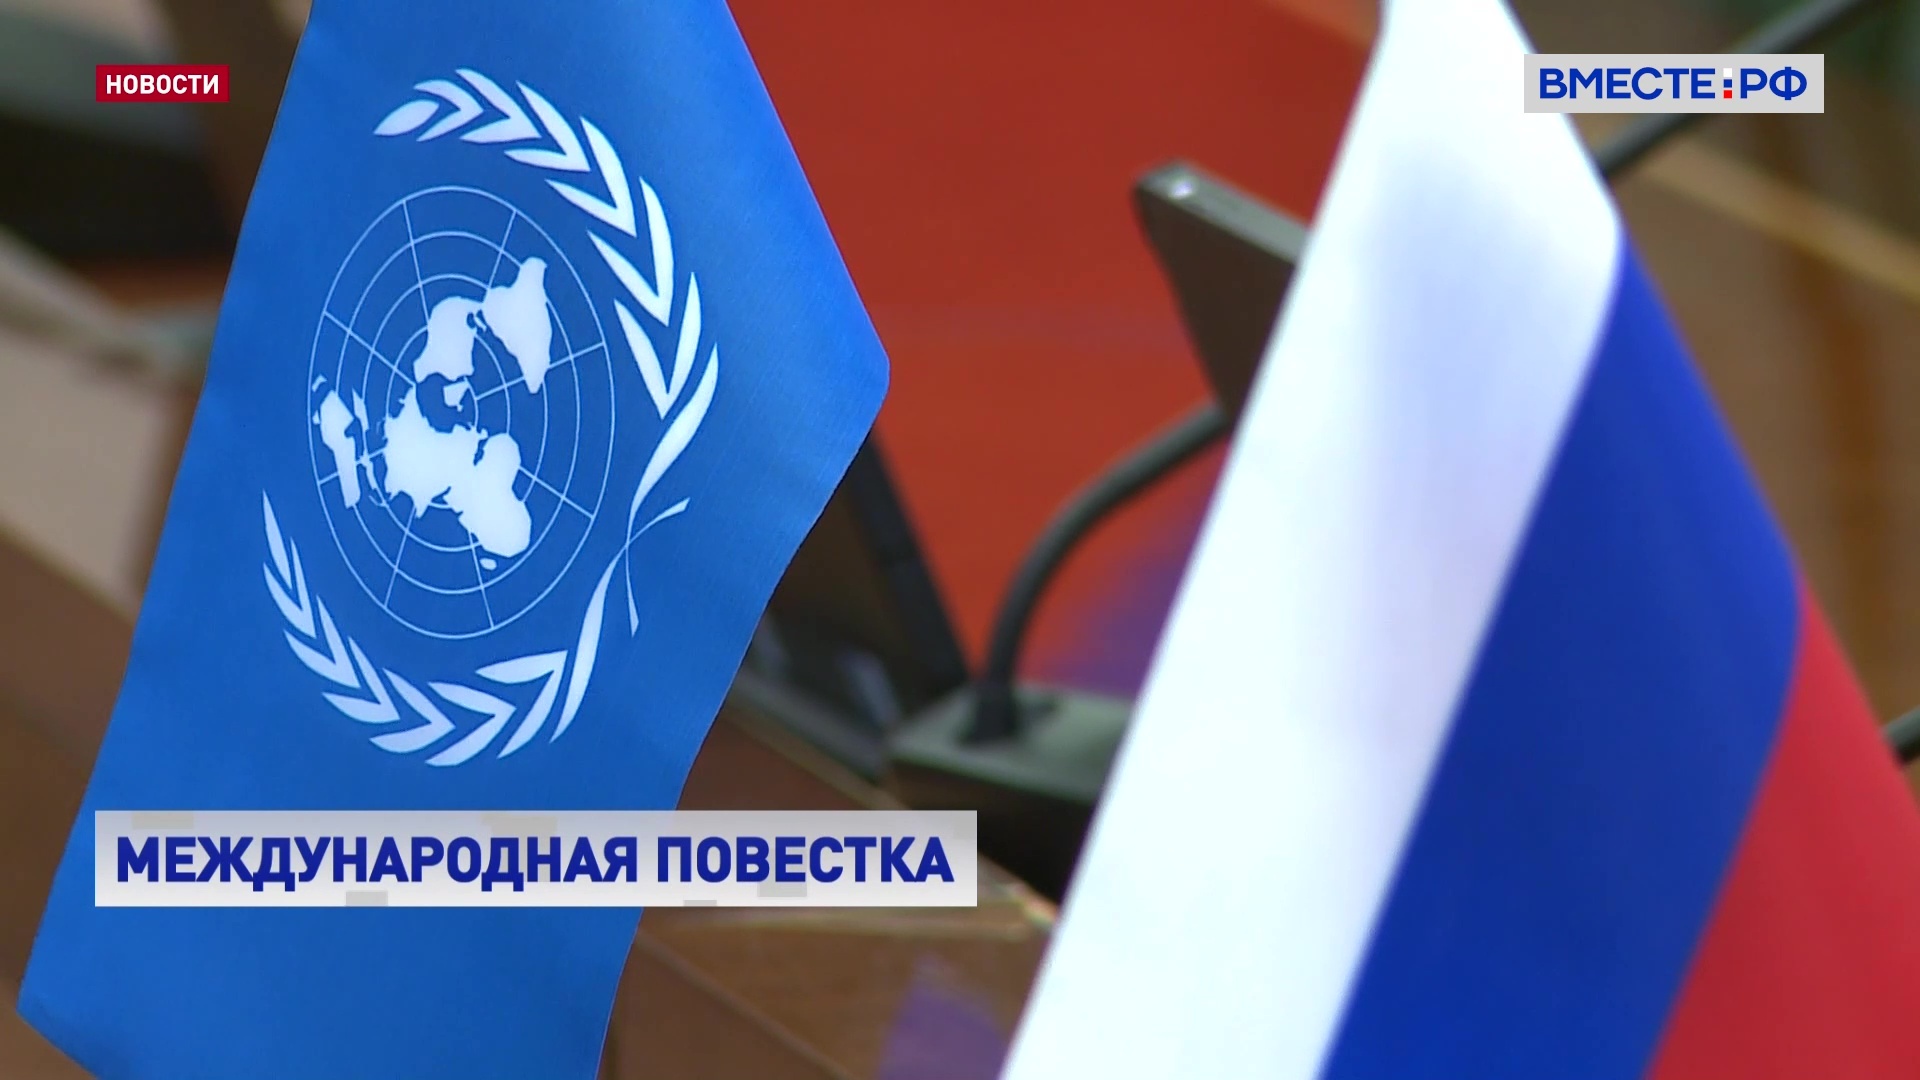 ООН проходит серьезные испытания в современных реалиях, считает сенатор Карасин